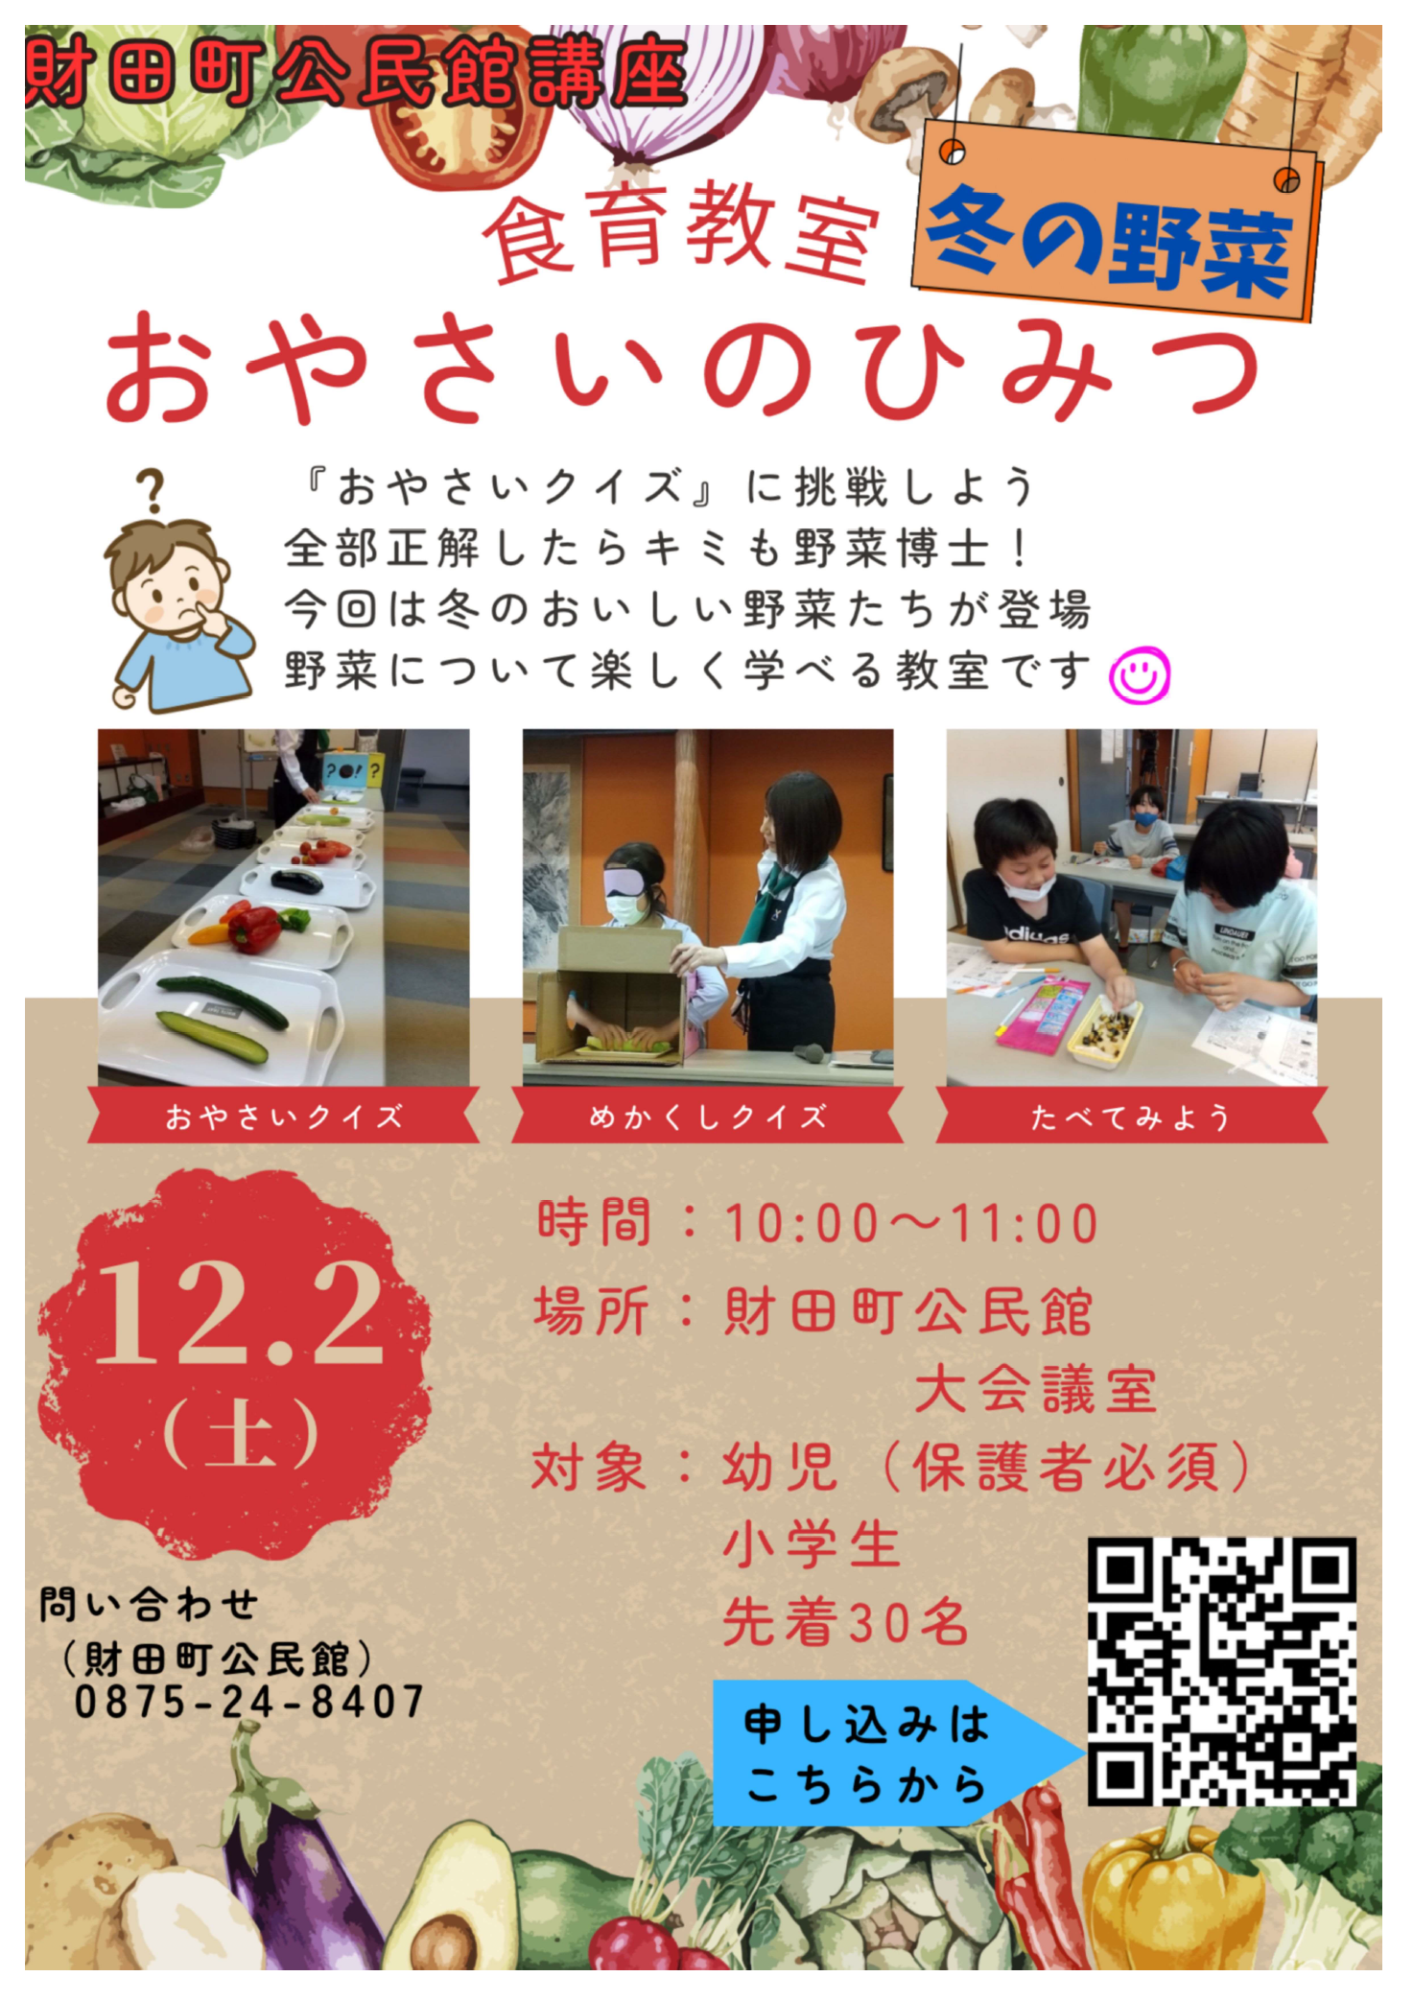 財田町公民館 食育教室